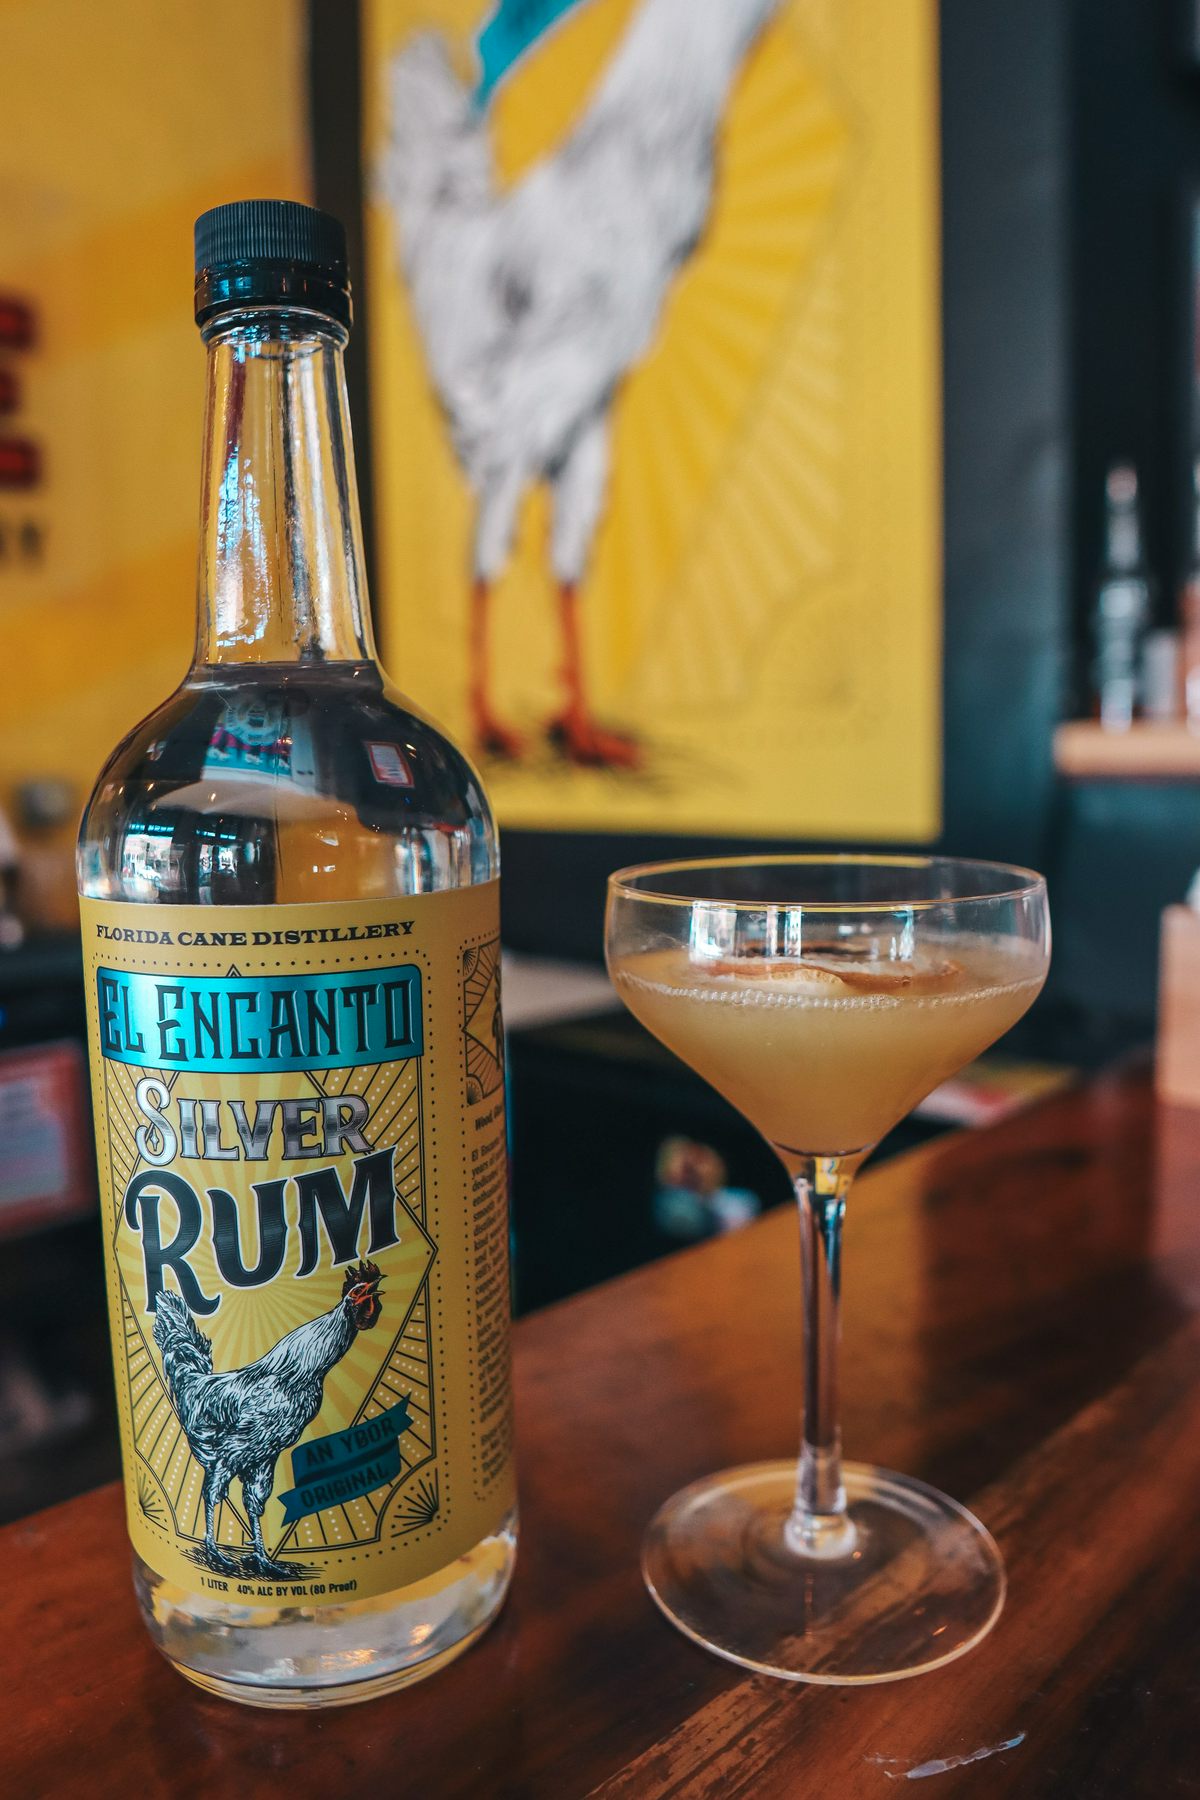 Florida Cane rum cocktail